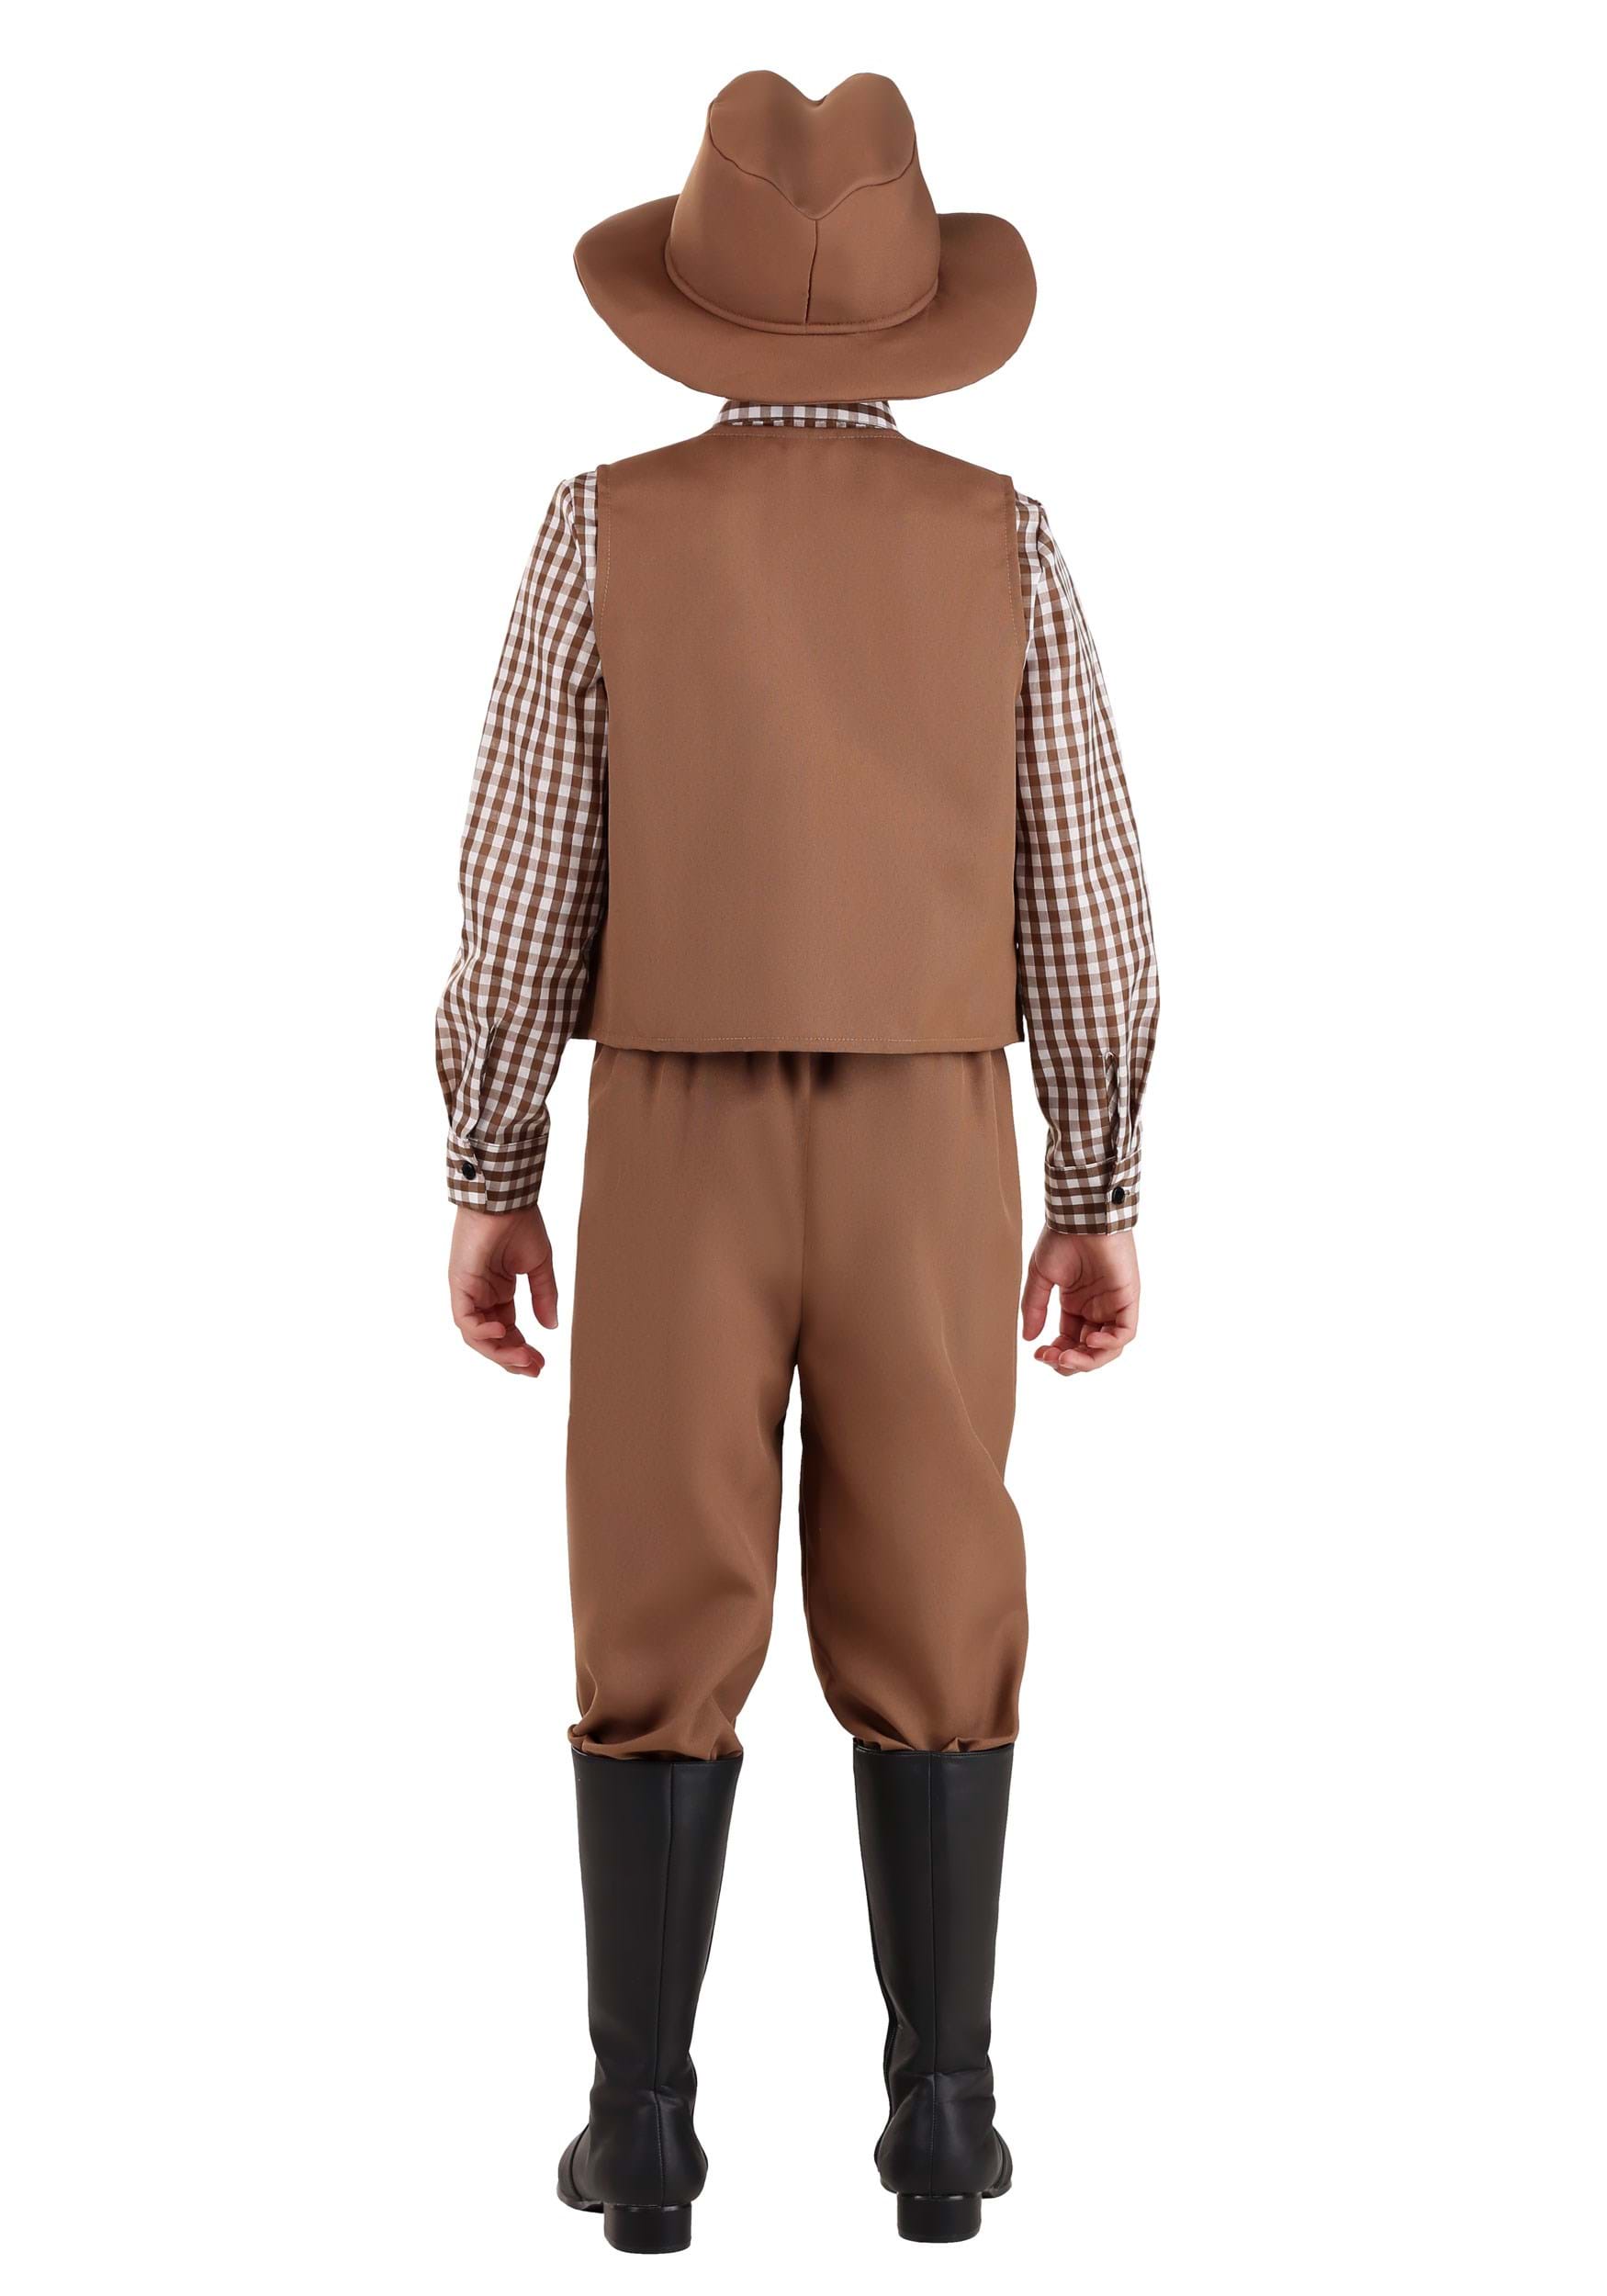 Western Pioneer Kid's Costume